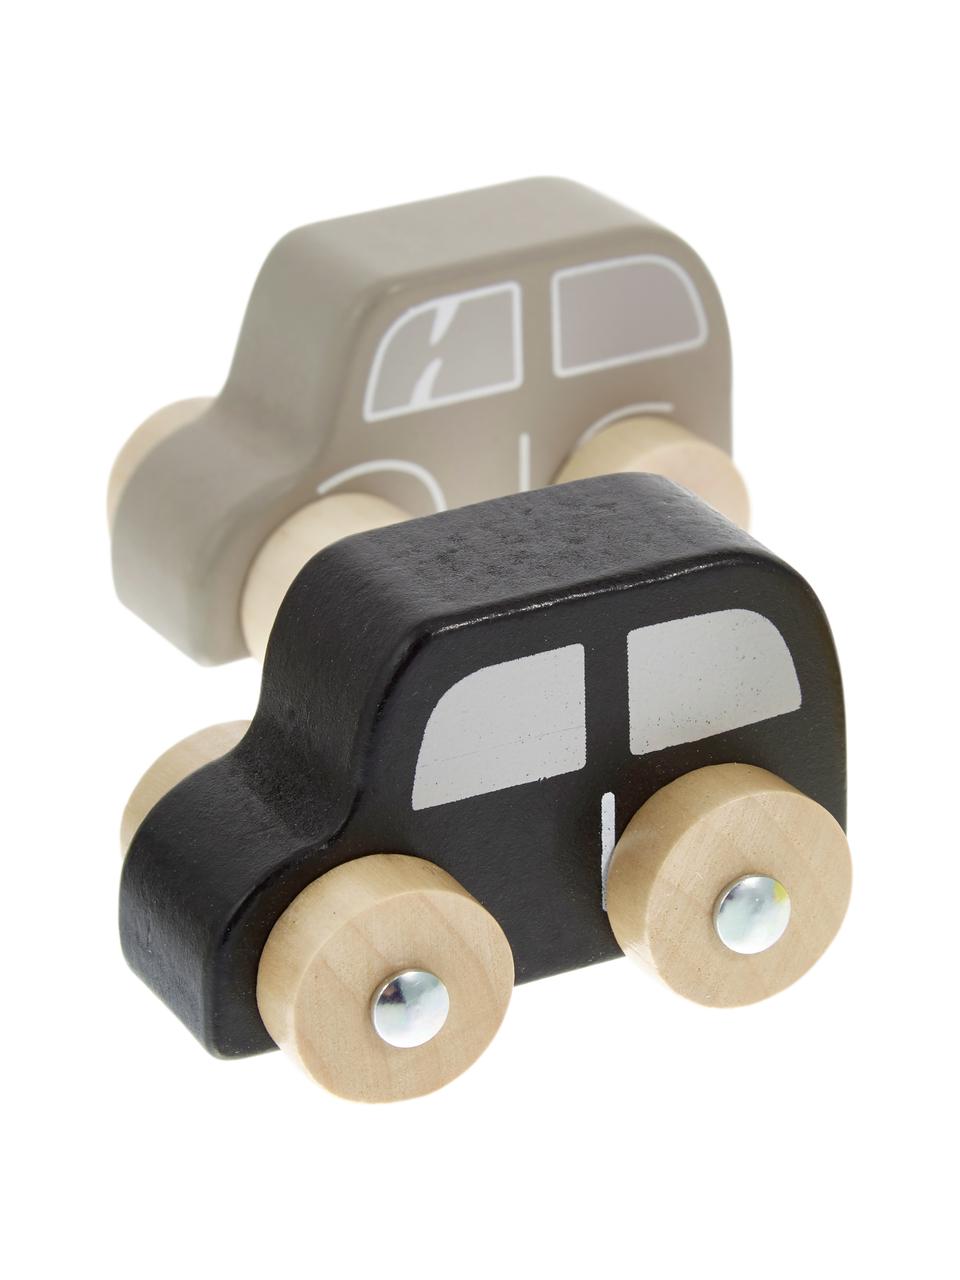 Spielzeugauto-Set Car, 6-tlg., Mitteldichte Holzfaserplatte (MDF), Lotusbaumholz, Bunt, B 20 x H 23 cm